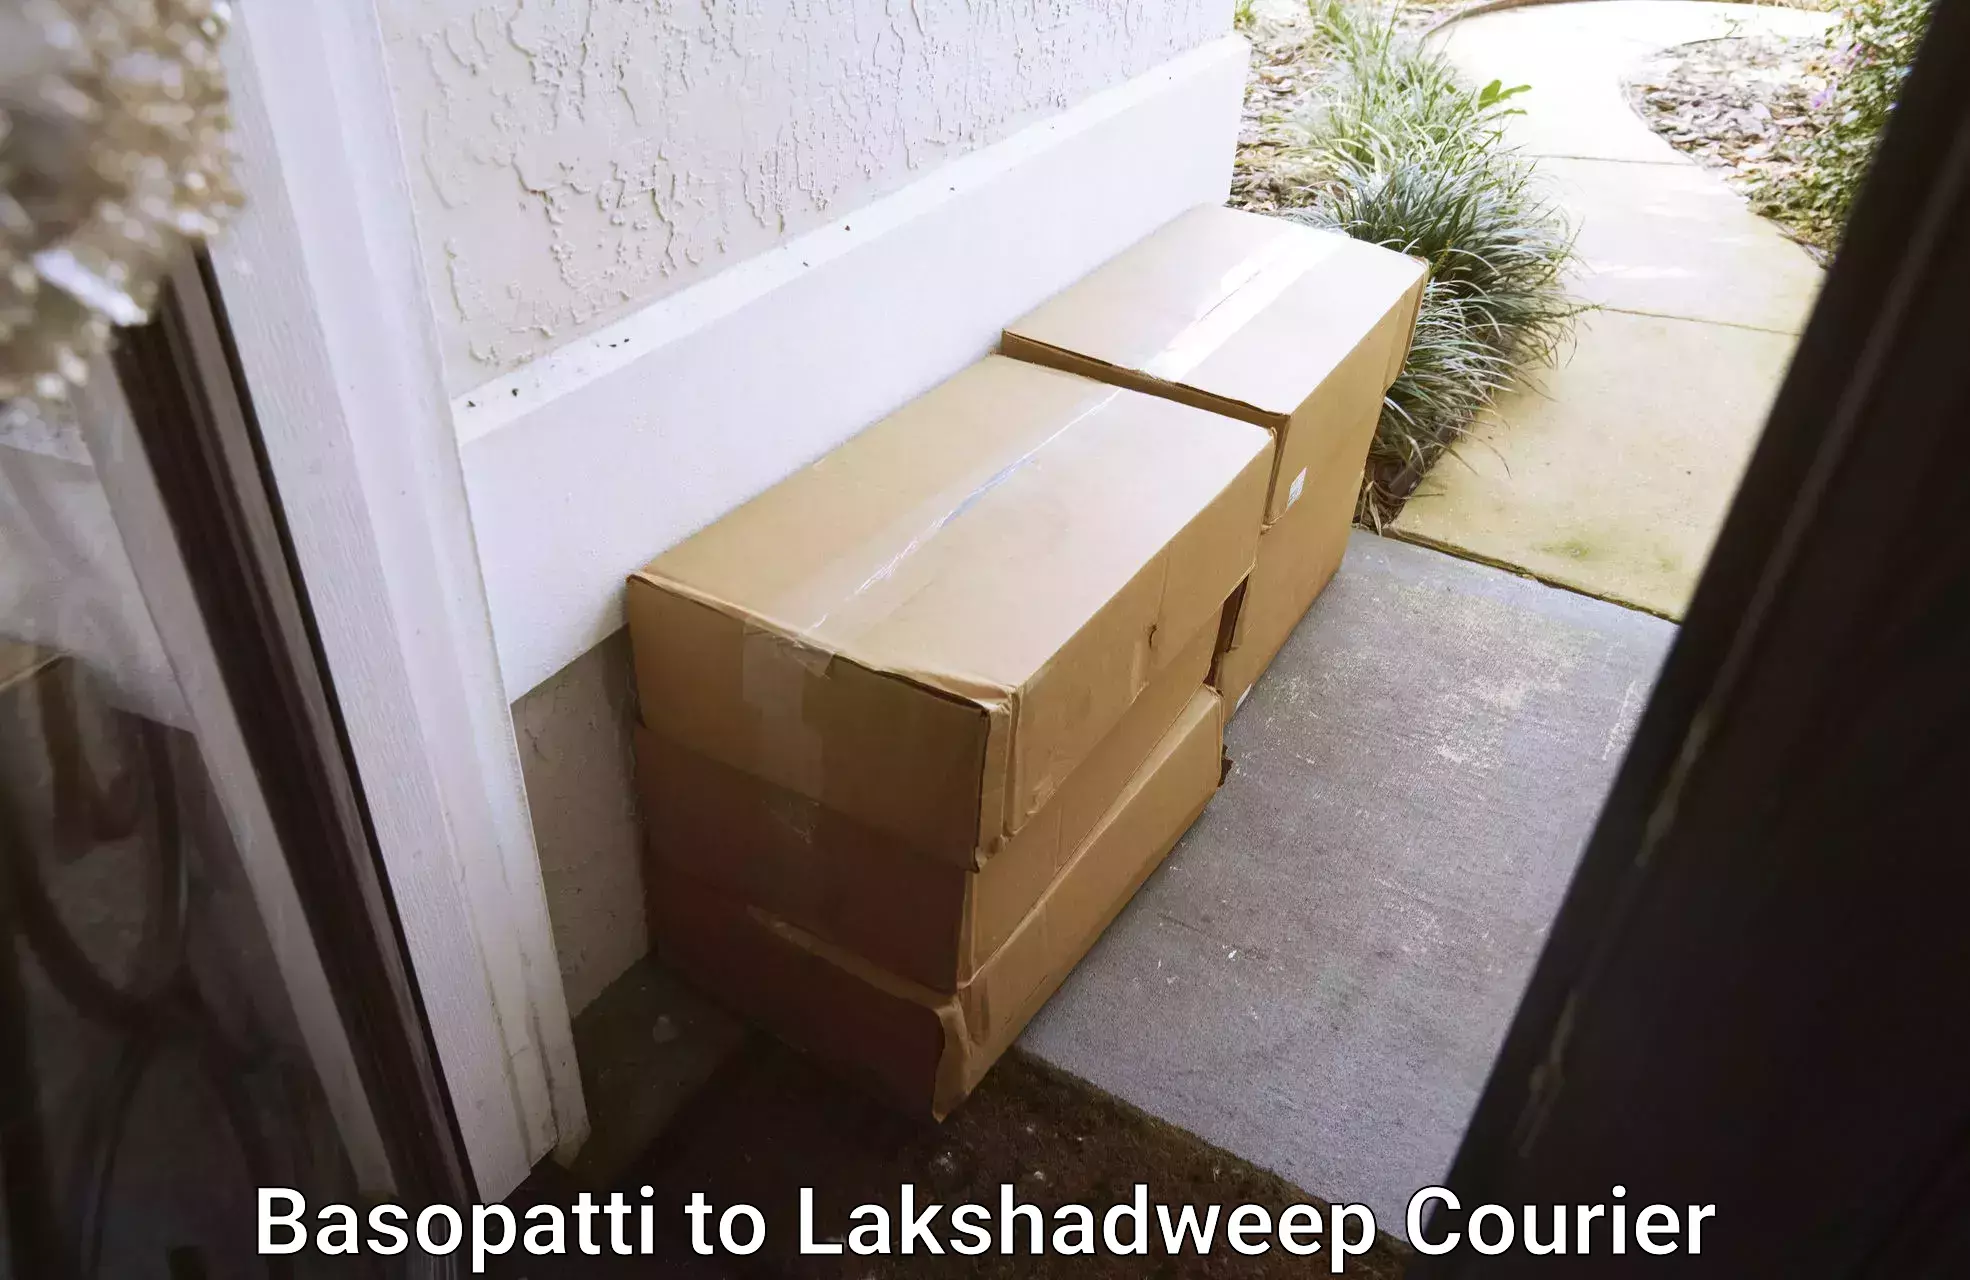 Furniture transport experts Basopatti to Lakshadweep